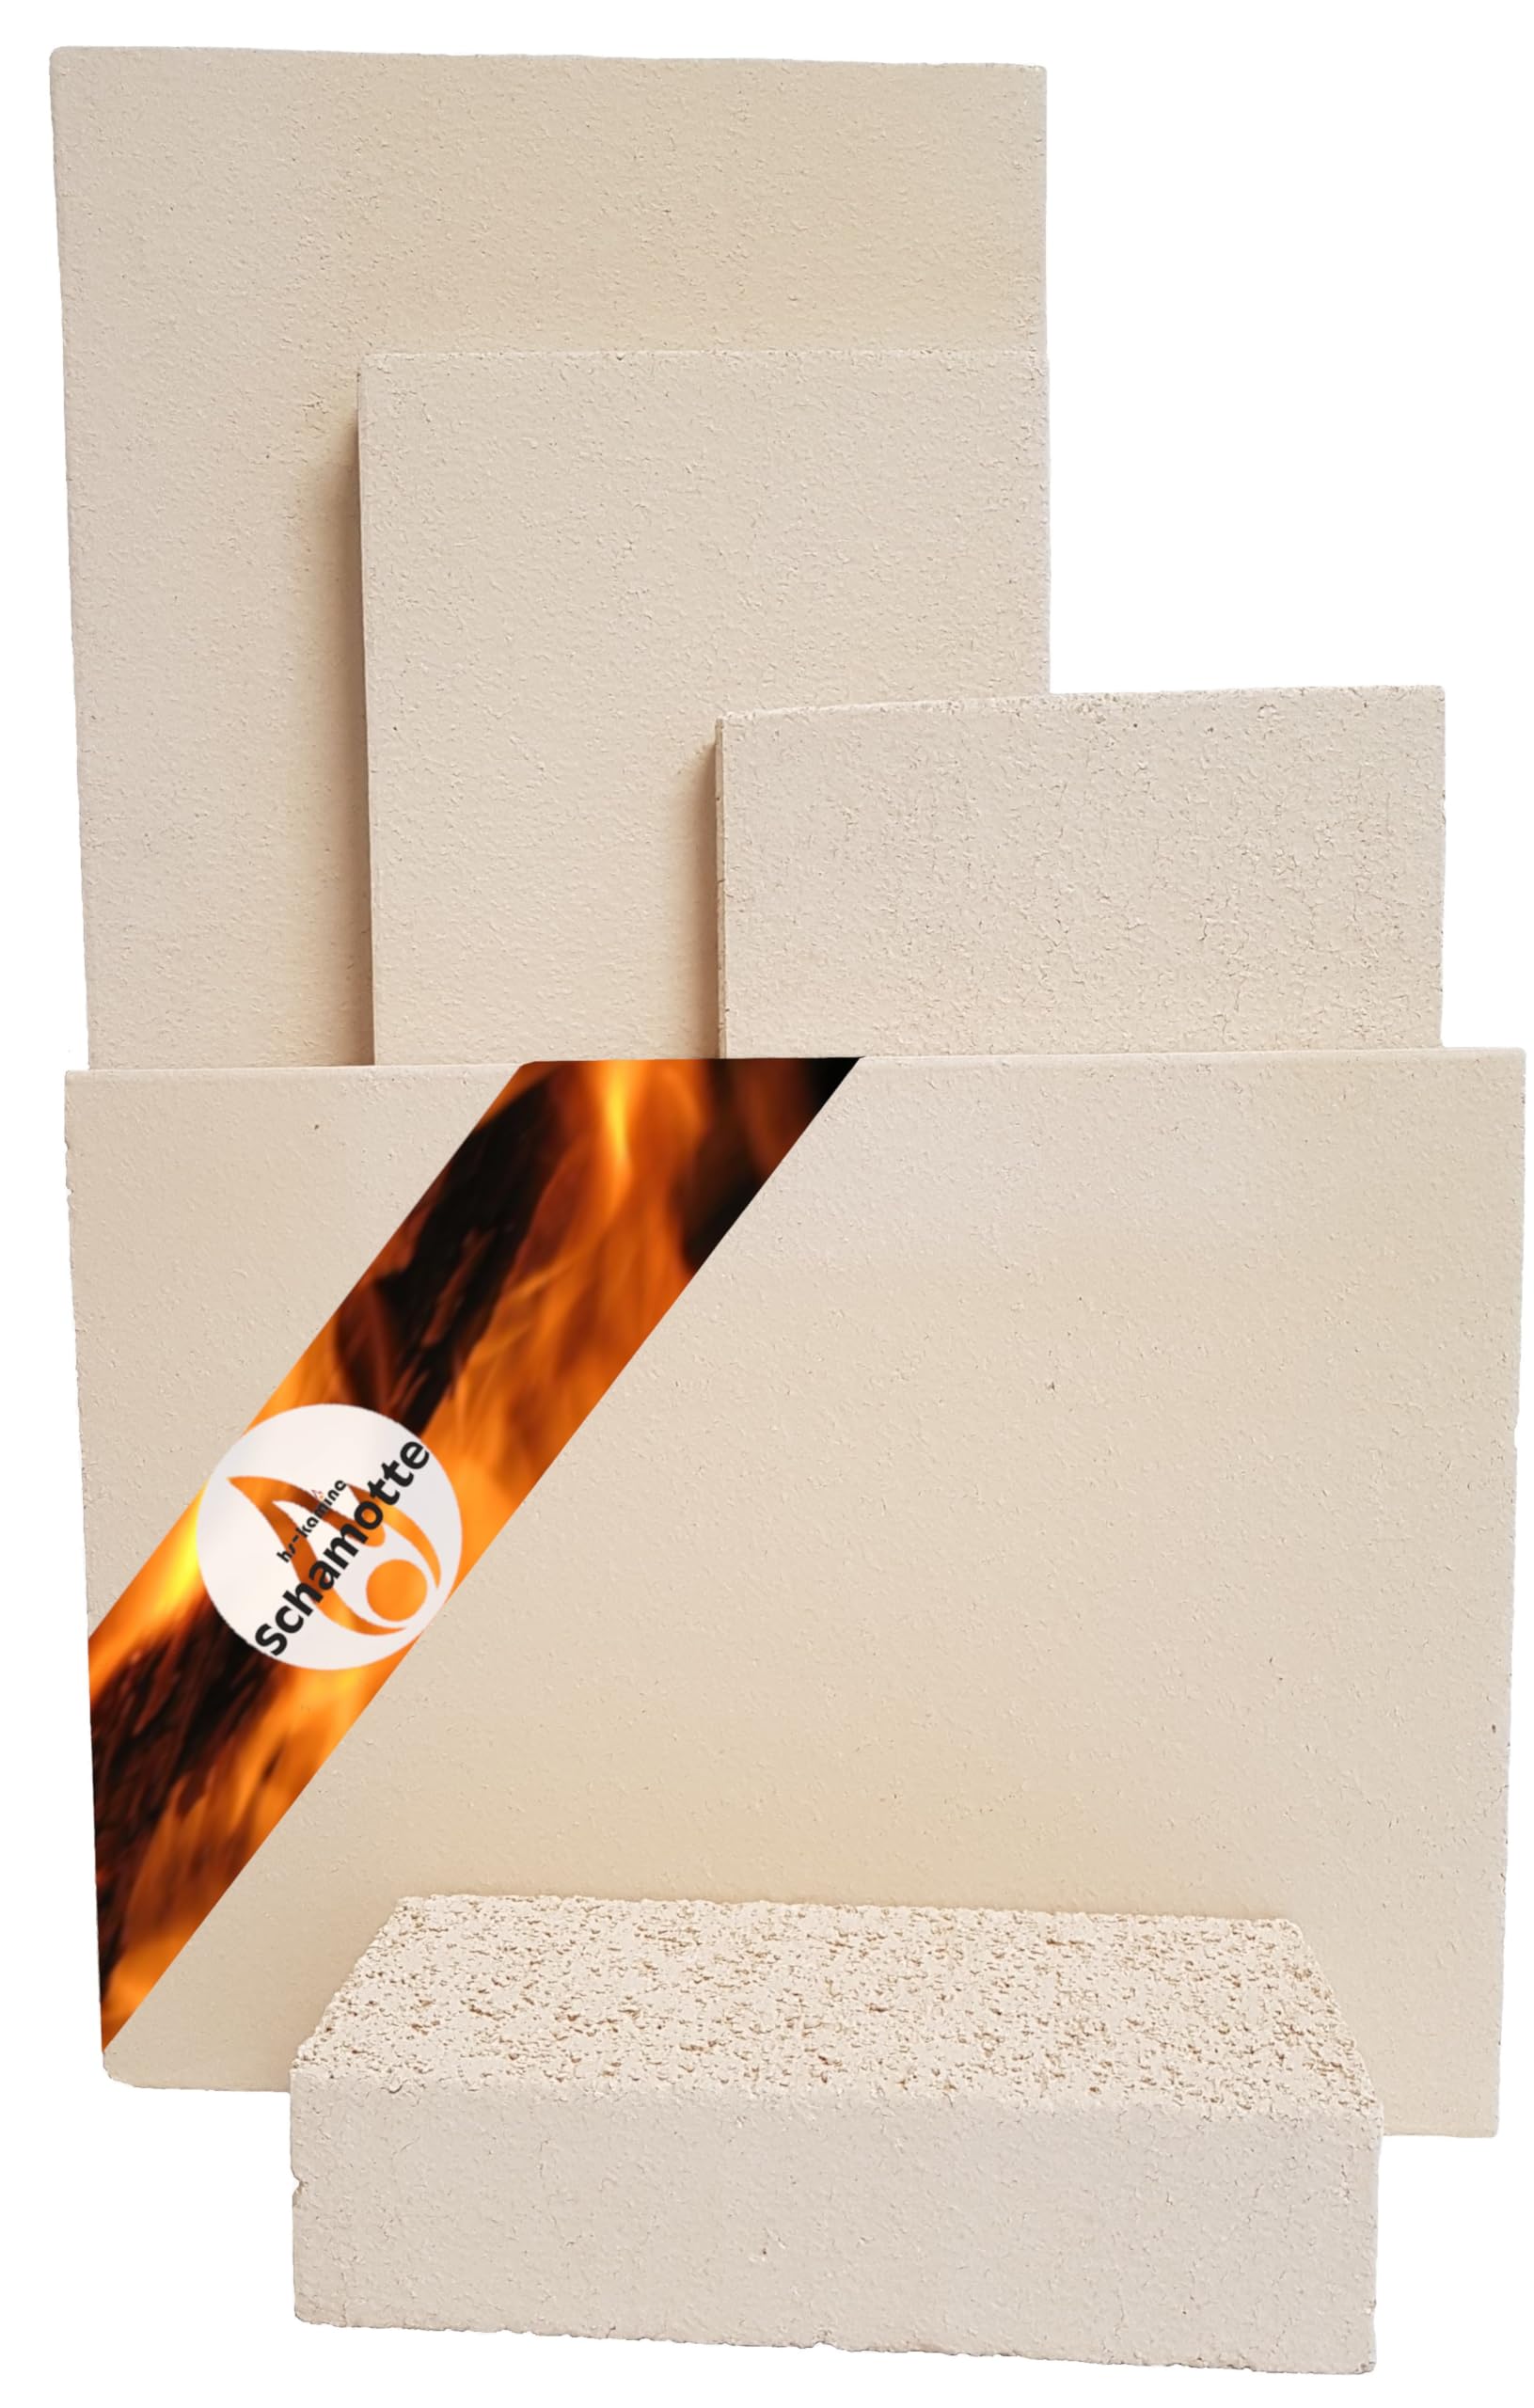 Schamotteplatten Premium Wh für den Feuerraum und auch für Holzbacköfen, Pizzaöfen und Grills feuerfest & lebensmittelecht viele Größen online verfügbar (250 x 124 x 64 mm, 5 Stück)